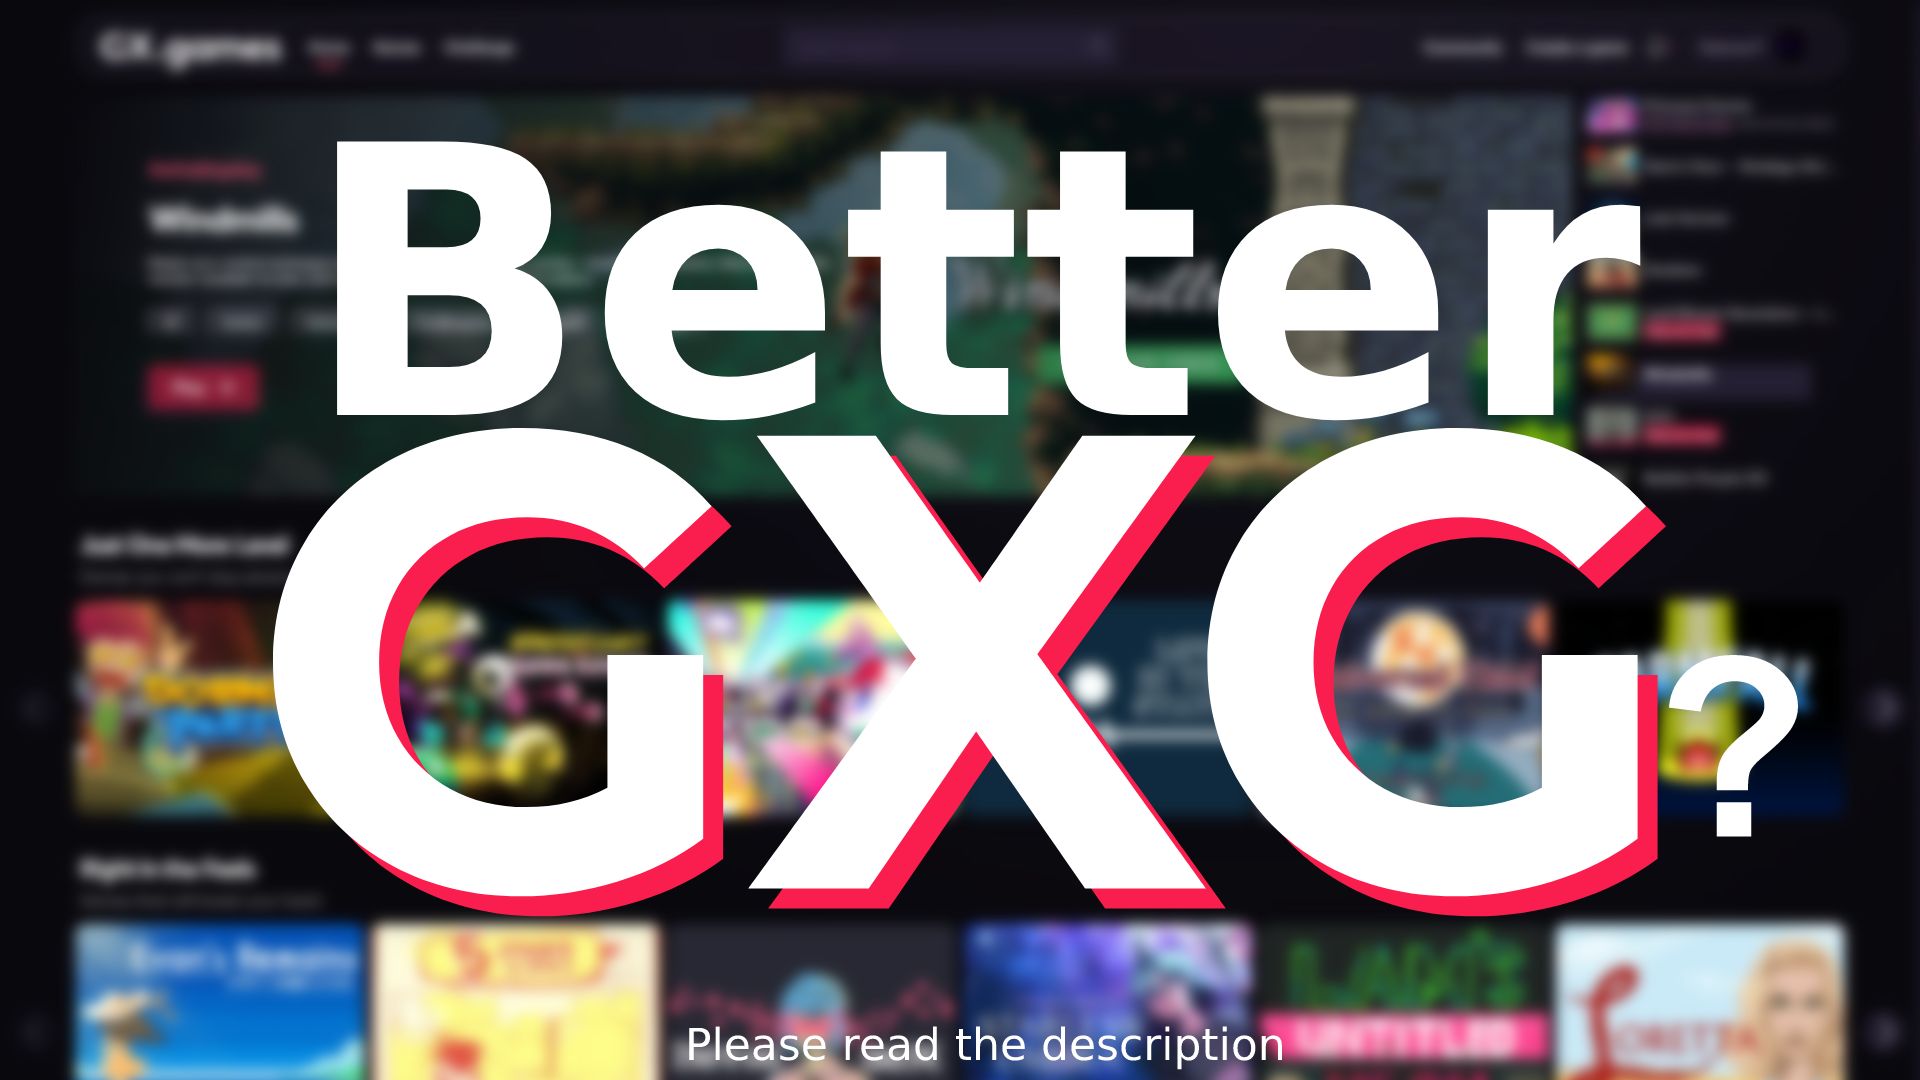 Screenshot of Better GXG? (gx.games)